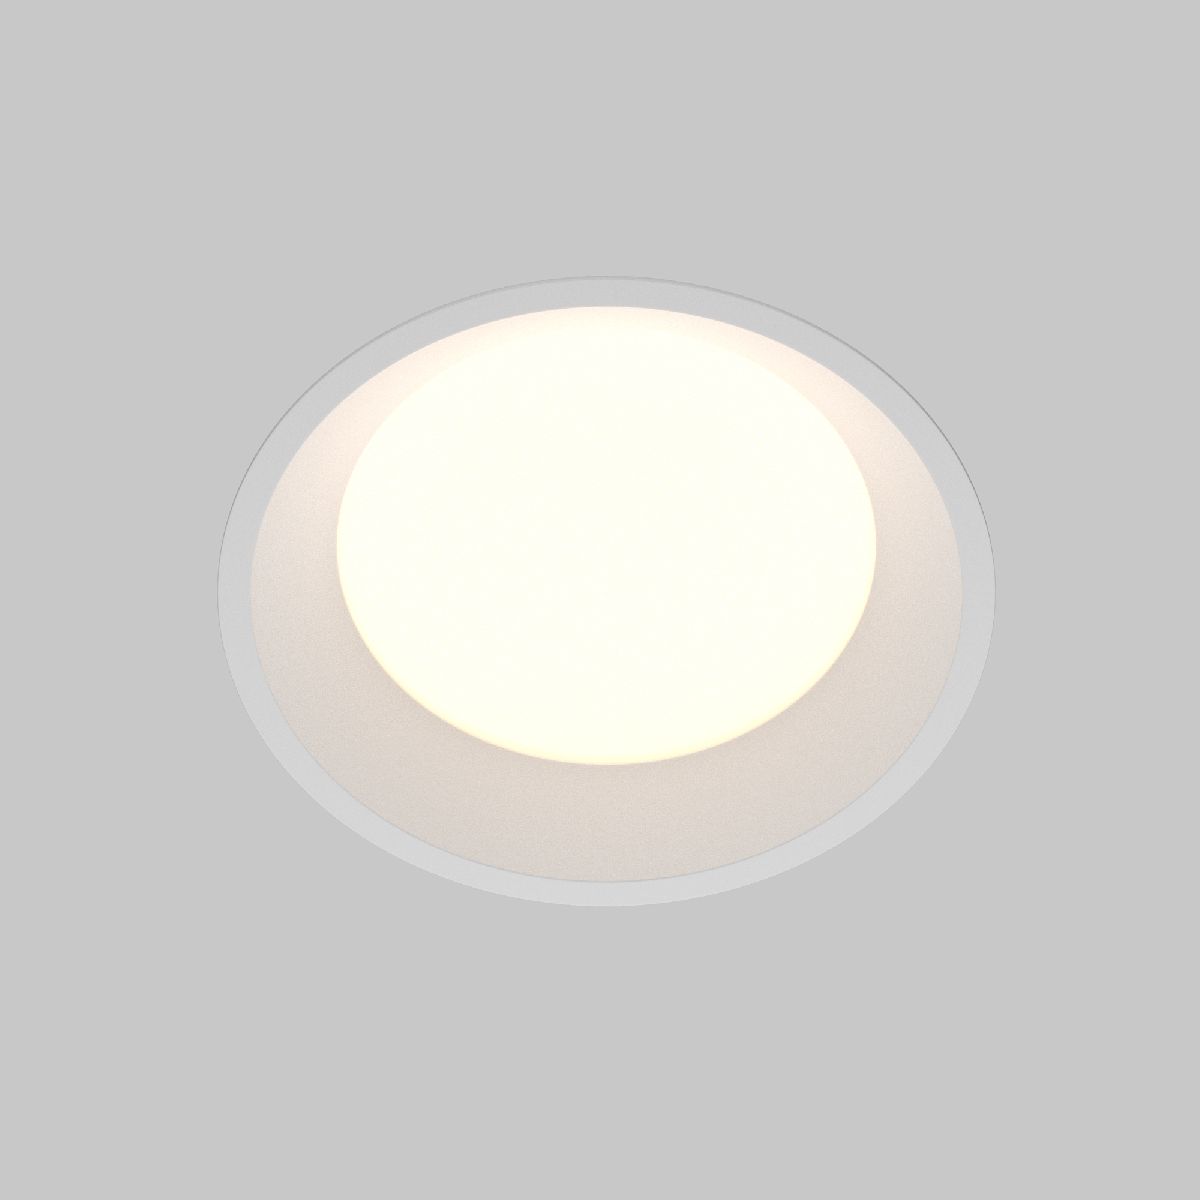 Встраиваемый светильник Maytoni Technical Downlight Okno DL055-18W3-4-6K-W